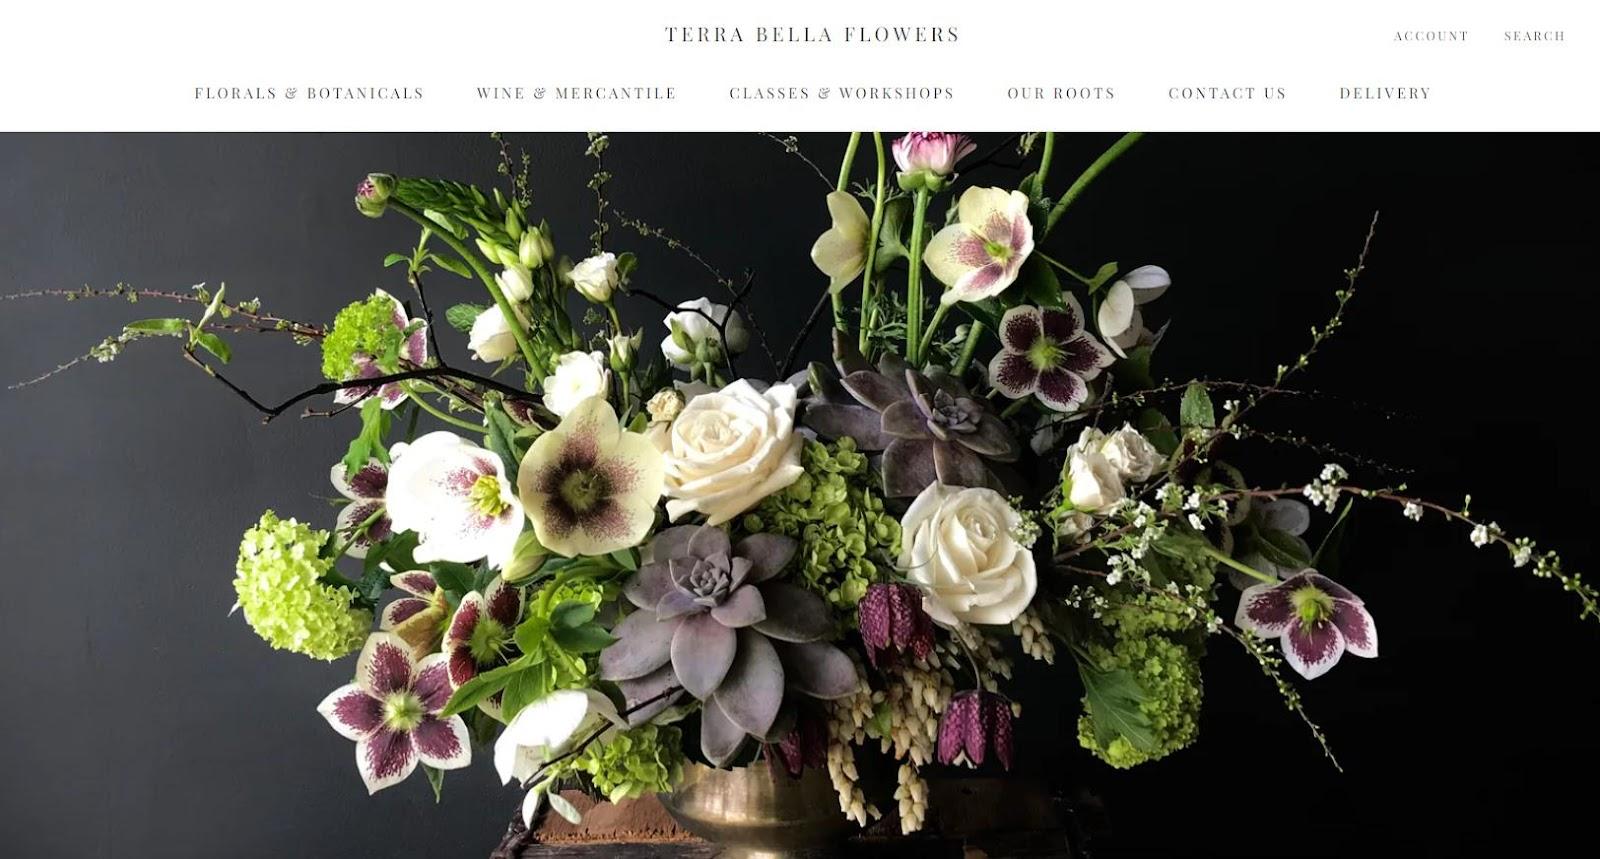 Best florist websites — design example from Terra Bella Flowers.